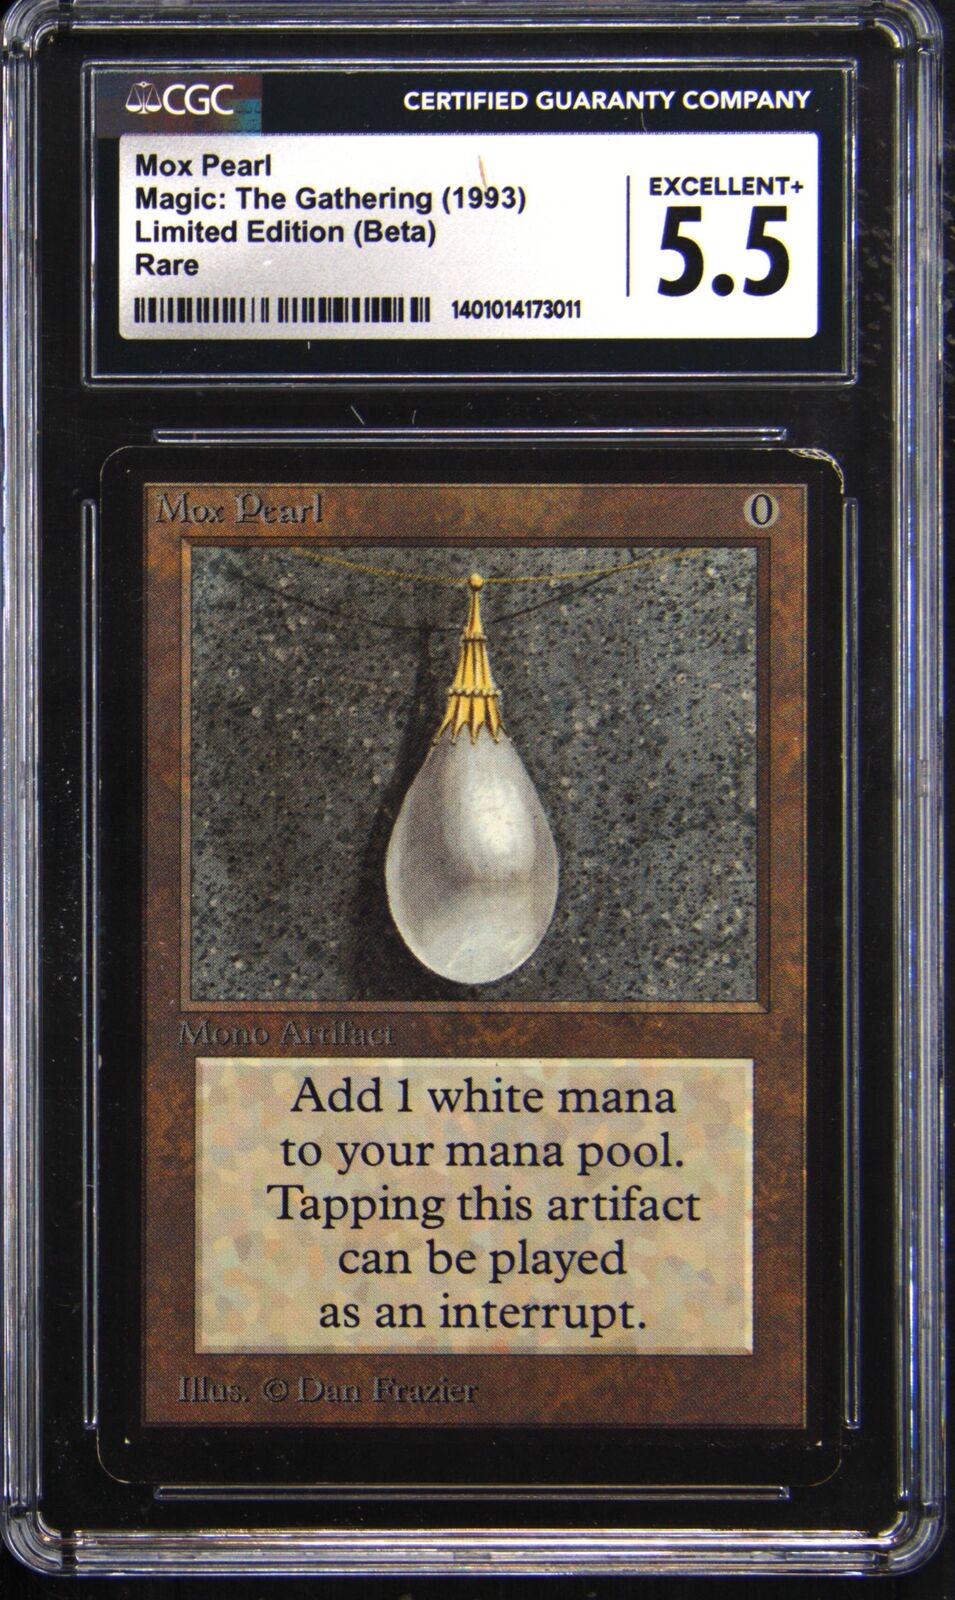 1993 Beta Mox Pearl Rare Magic: The Gathering Card CGC 5.5